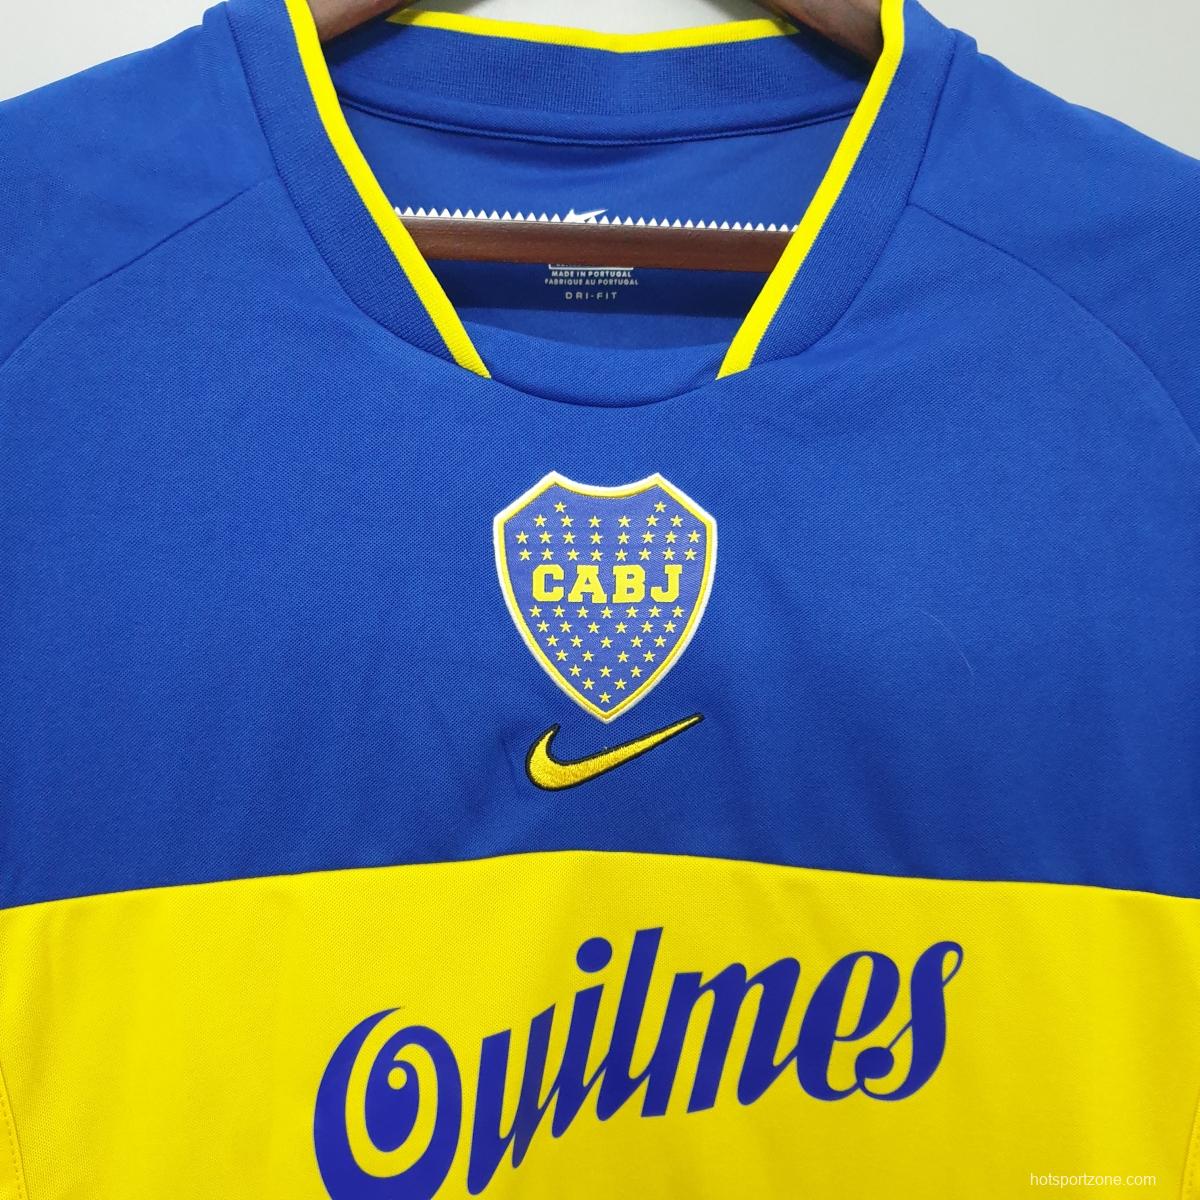 Boca Juniors 2001 retro shirt home Soccer Jersey